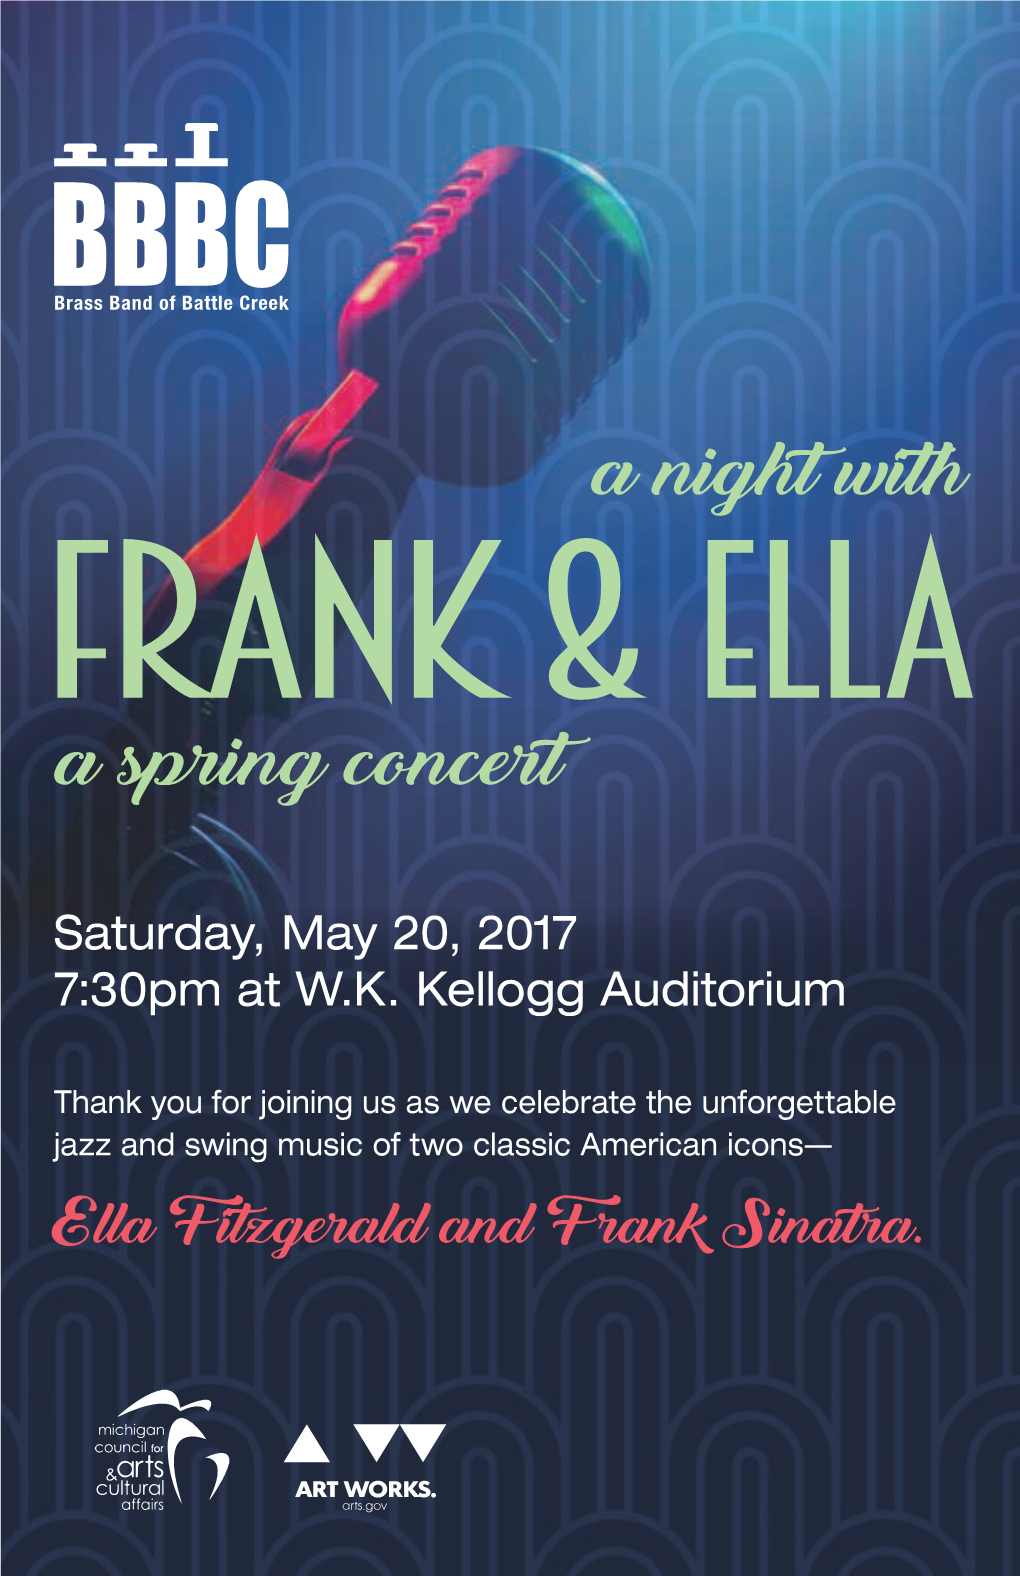 Saturday, May 20, 2017 7:30Pm at W.K. Kellogg Auditorium